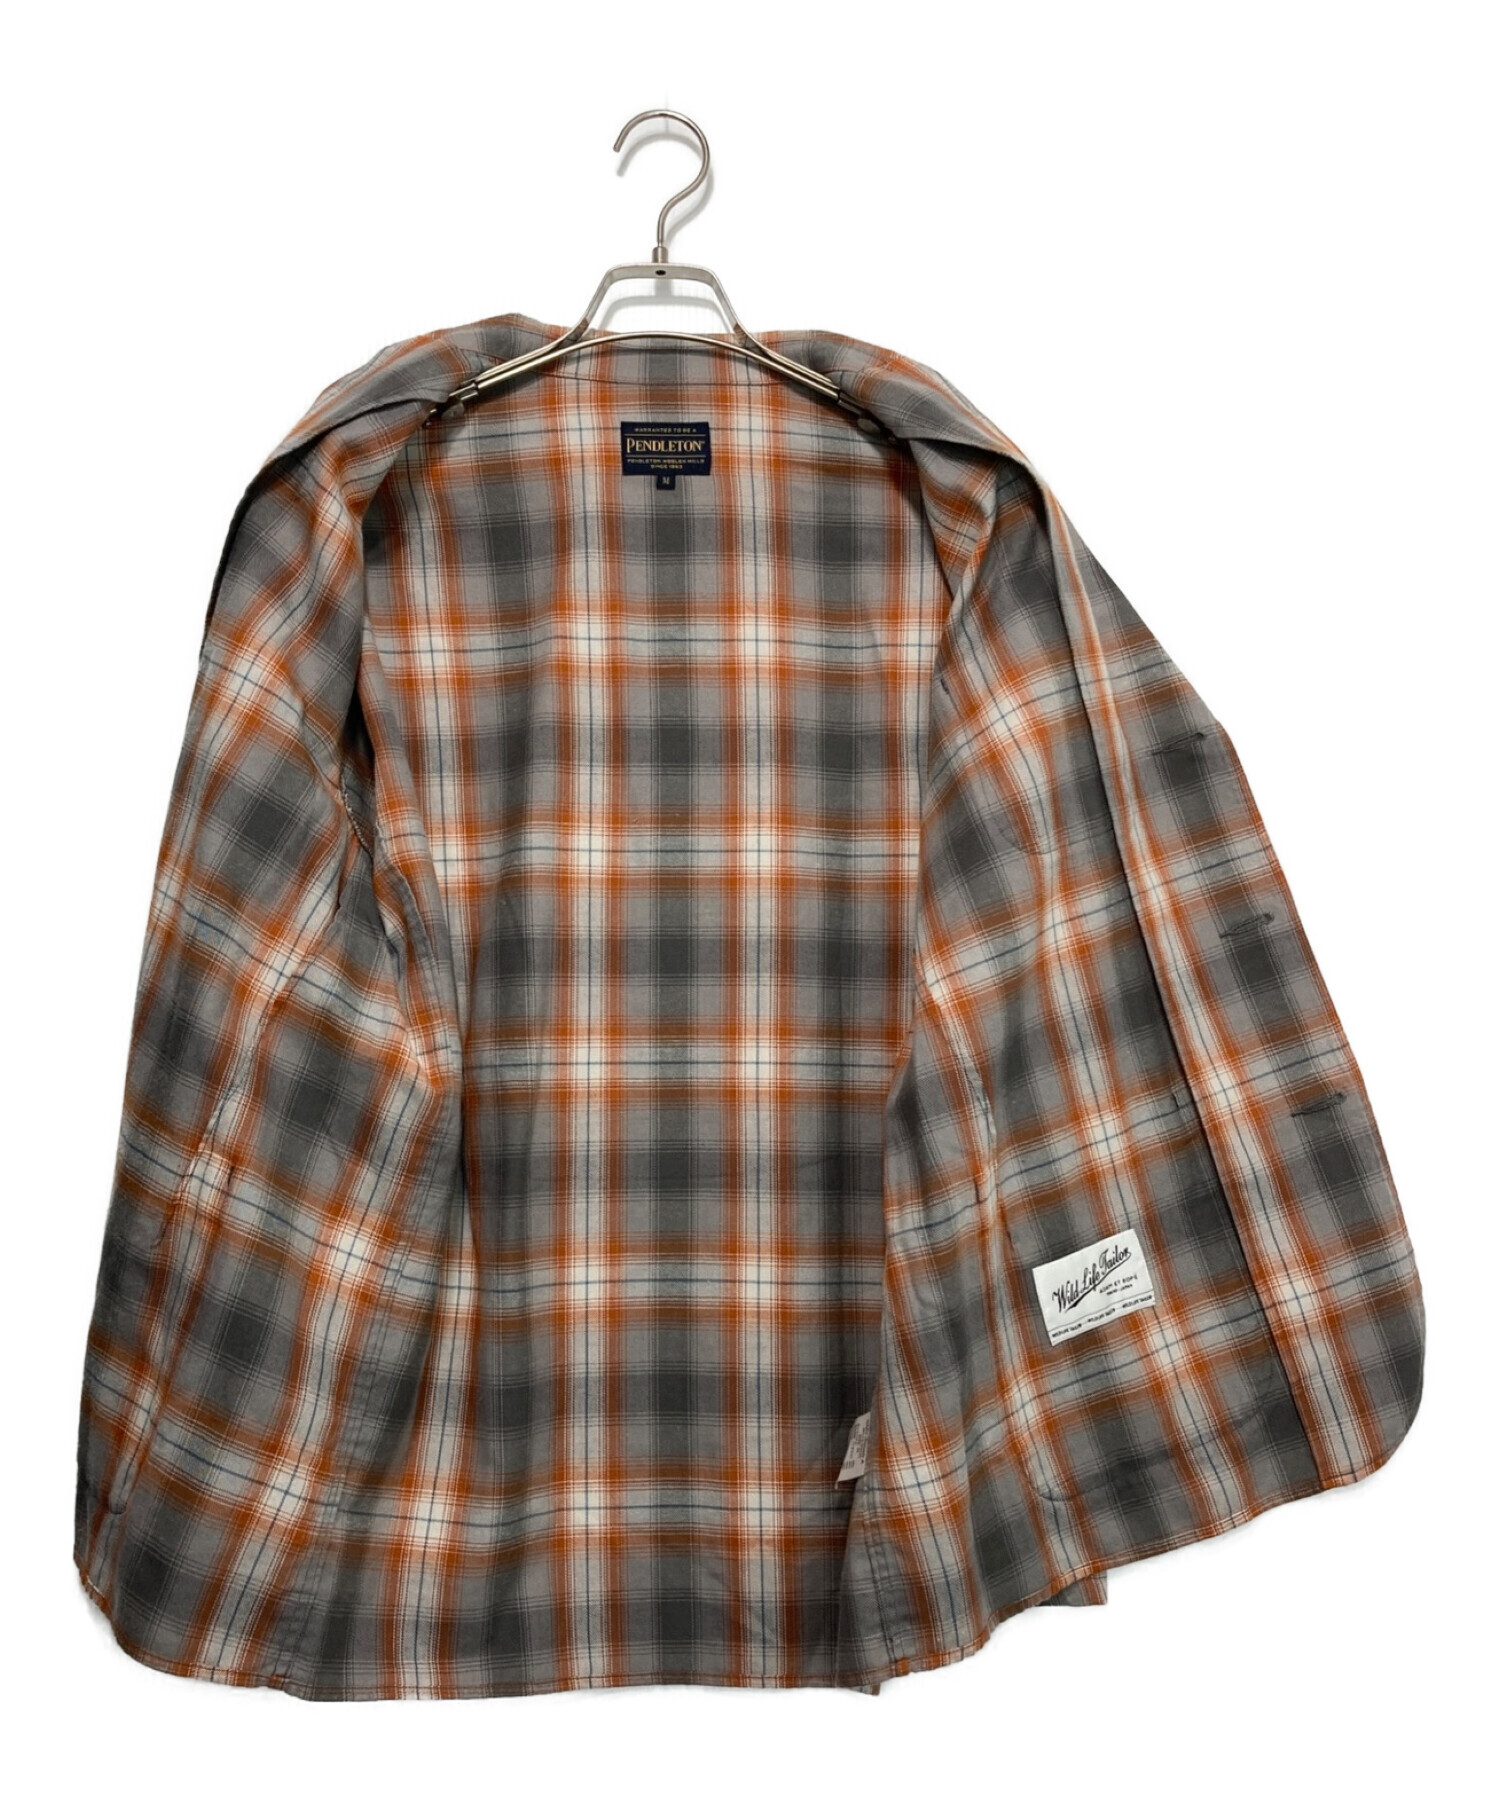 PENDLETON (ペンドルトン) Wild Life Tailor (ワイルドワイフテイラー) チェックシャツジャケット ブラウン サイズ:M